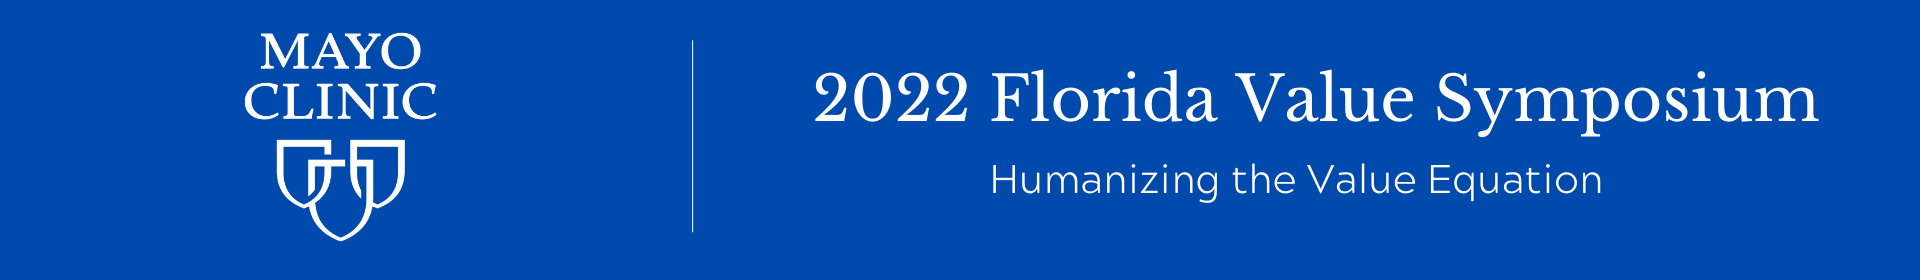 2022 Florida Value Symposium Event Event Banner